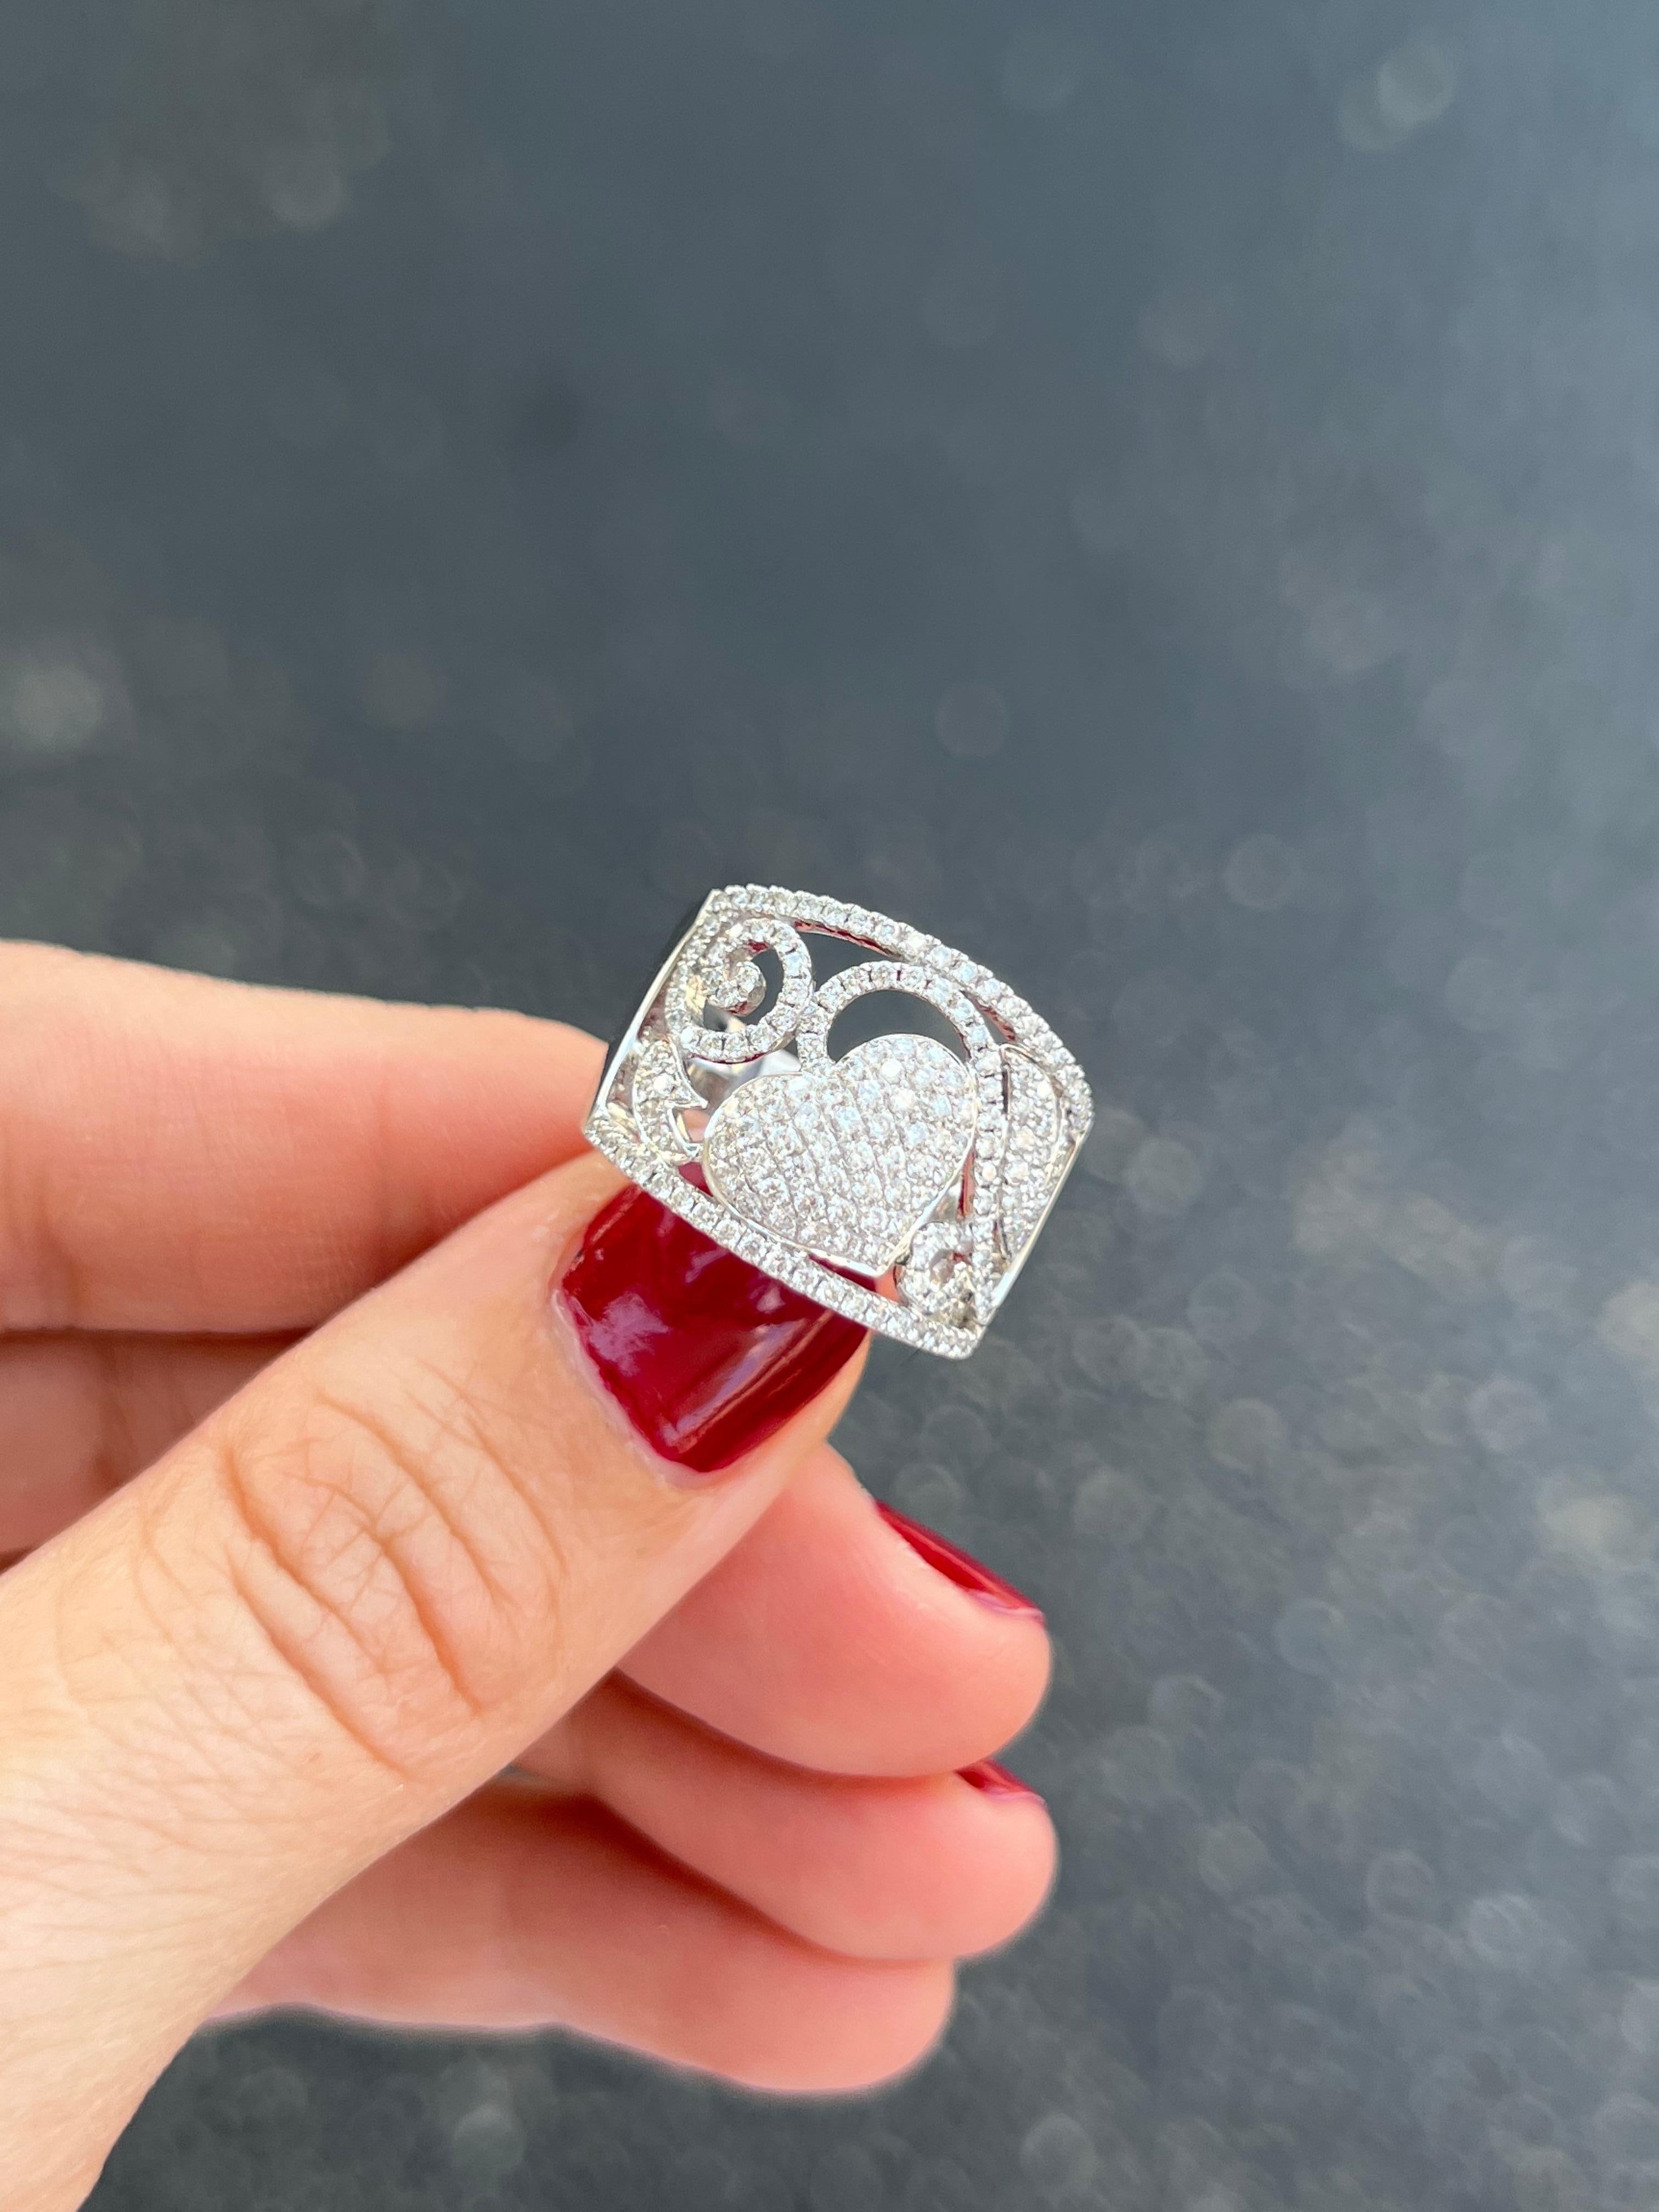 14k Weißgold Diamant Pflaster Ring mit Herzen und Ranken.

Eigenschaften
14K Weißgold
1.01 Karat Diamanten
Ringgröße 6,5, kann angepasst werden